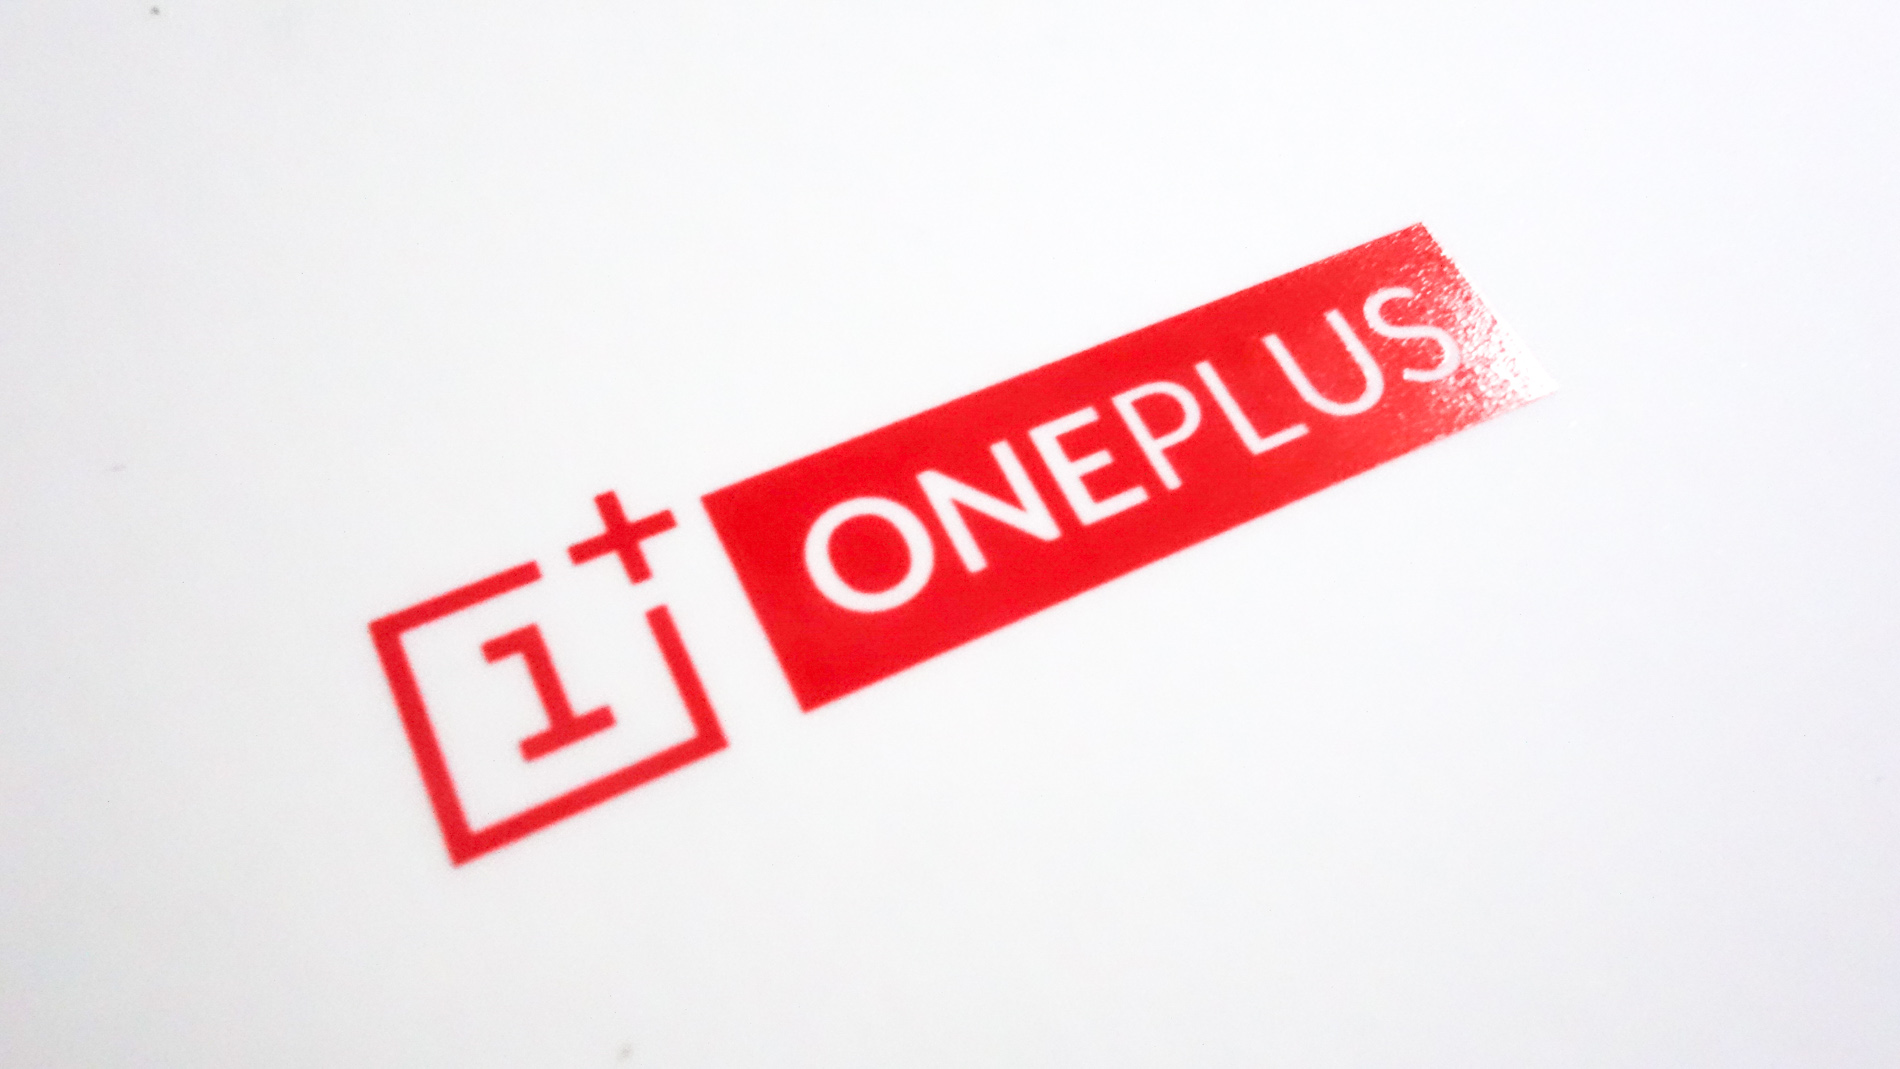 شركة OnePlus تؤكد توقفها عن جمع معلومات خاصة من هواتف مستخدميها